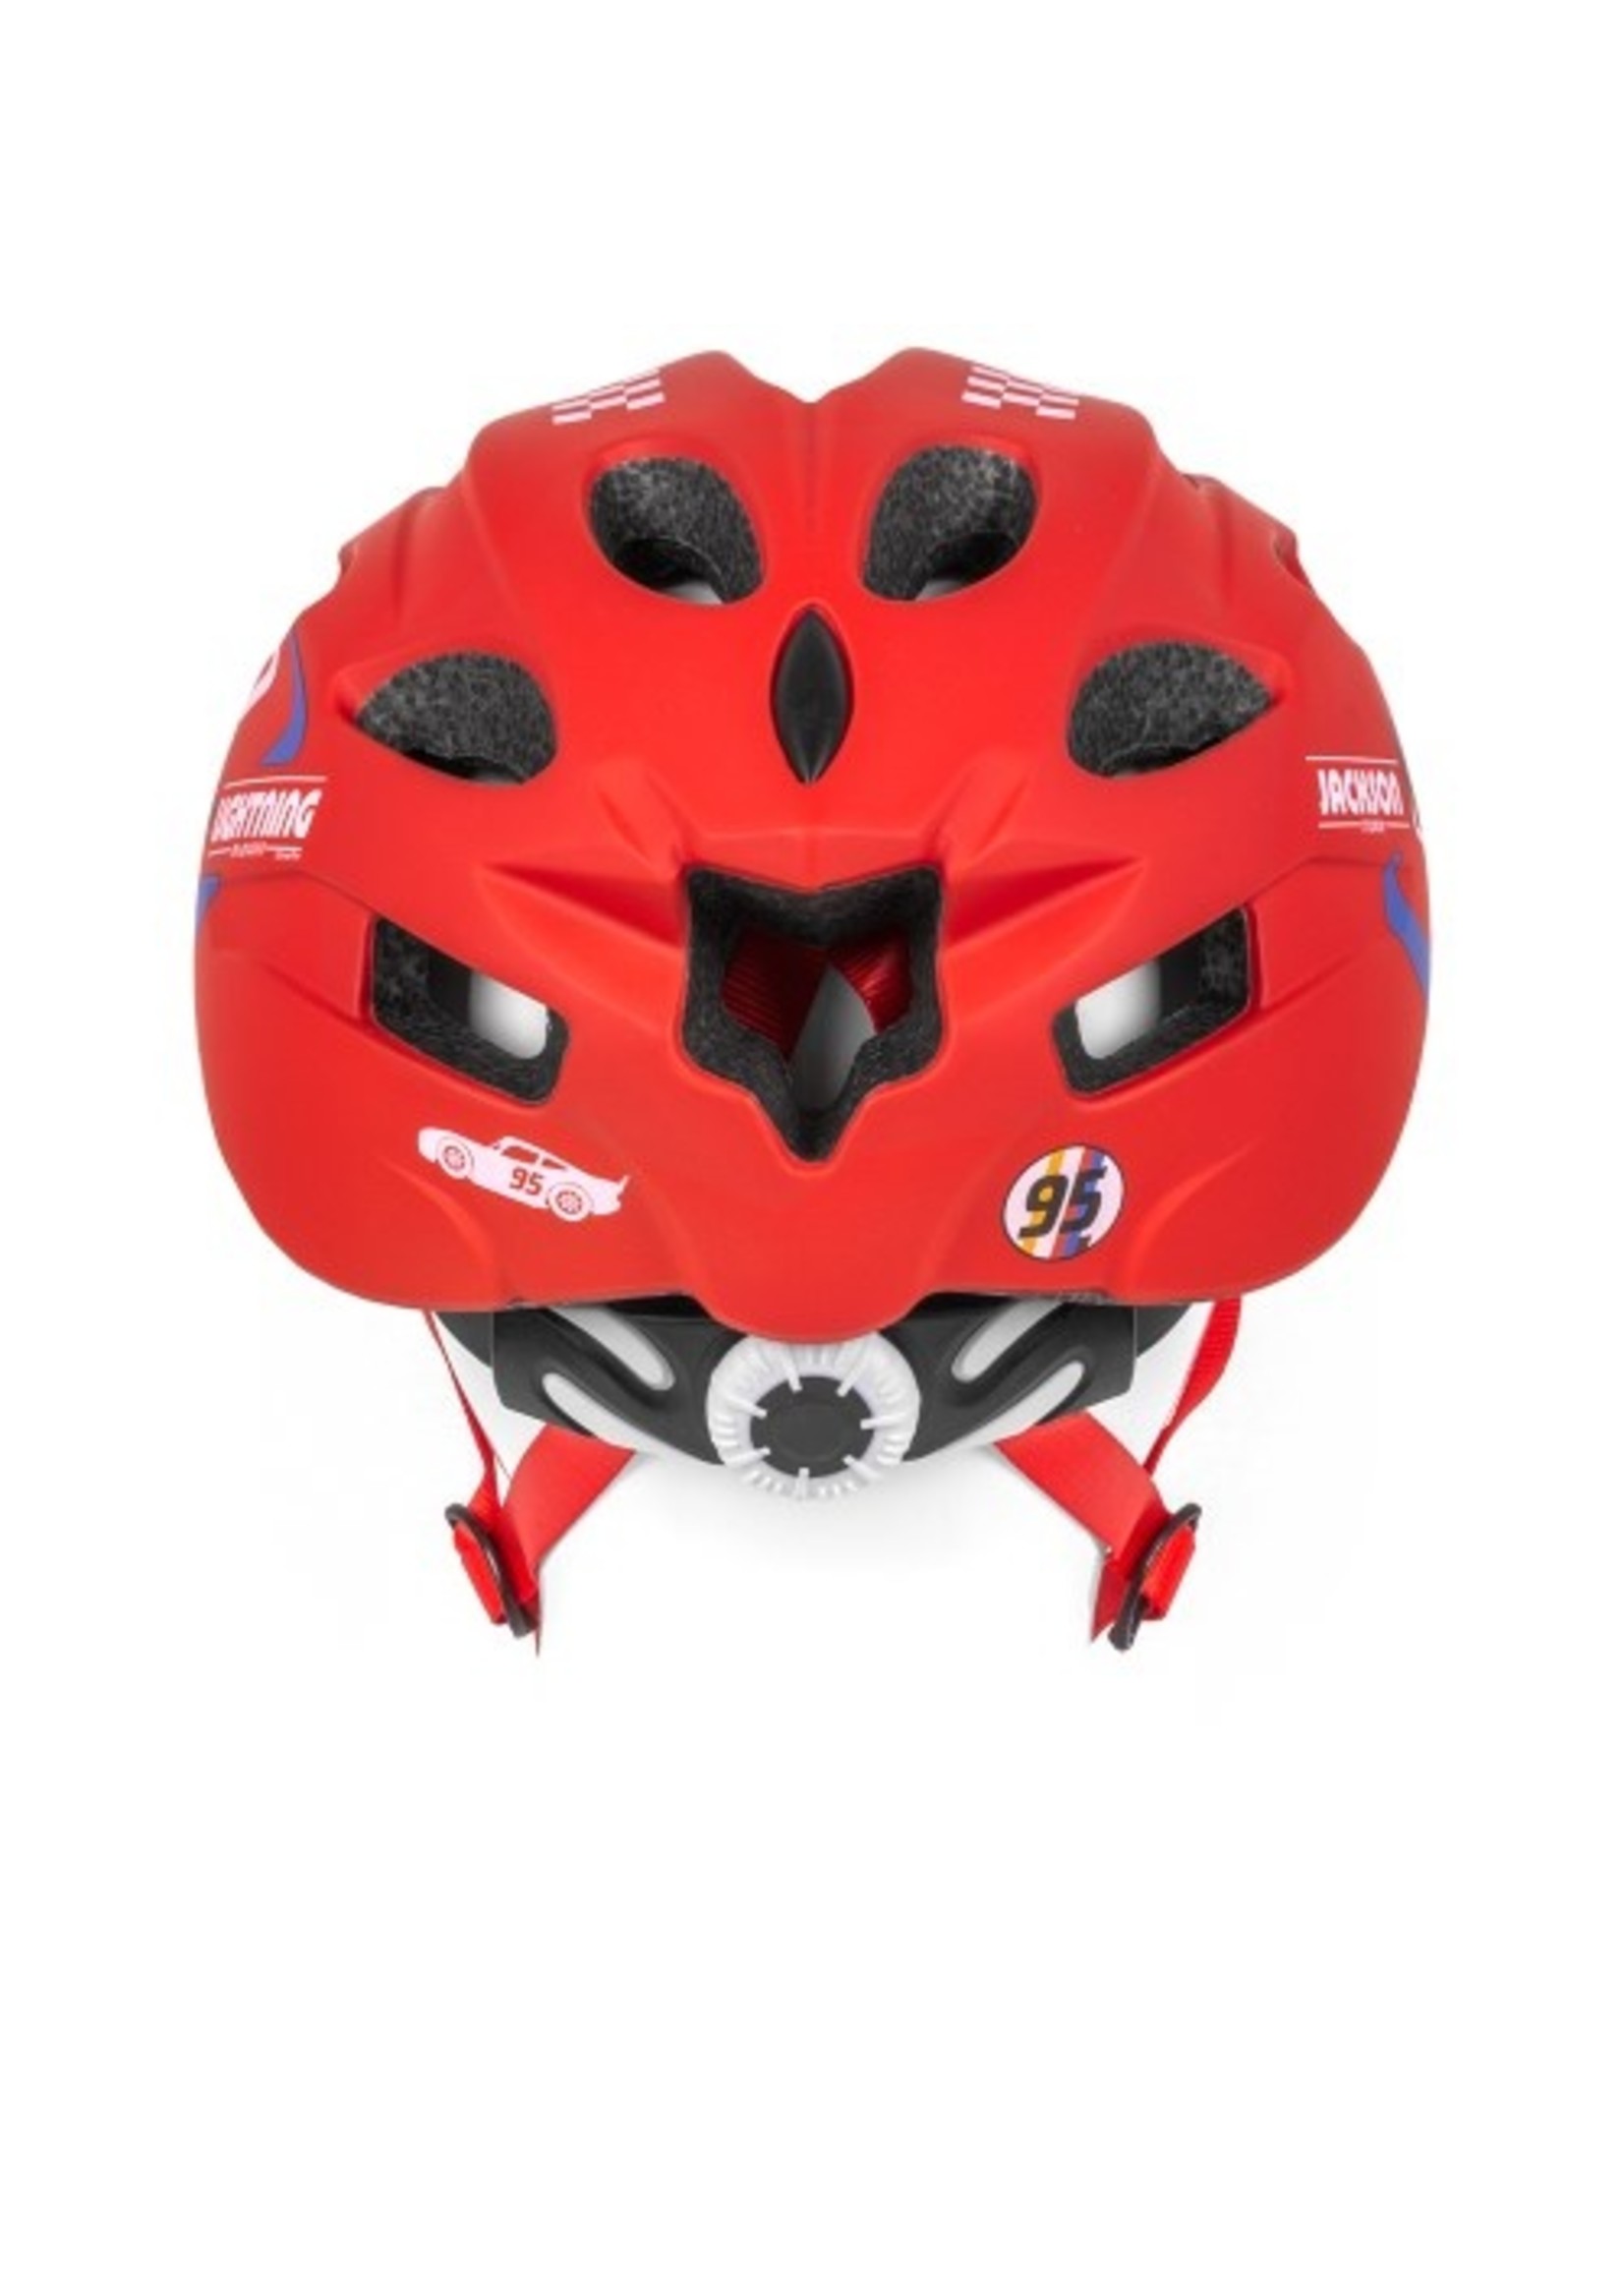 Disney Cars bicycle helmet from Disney red